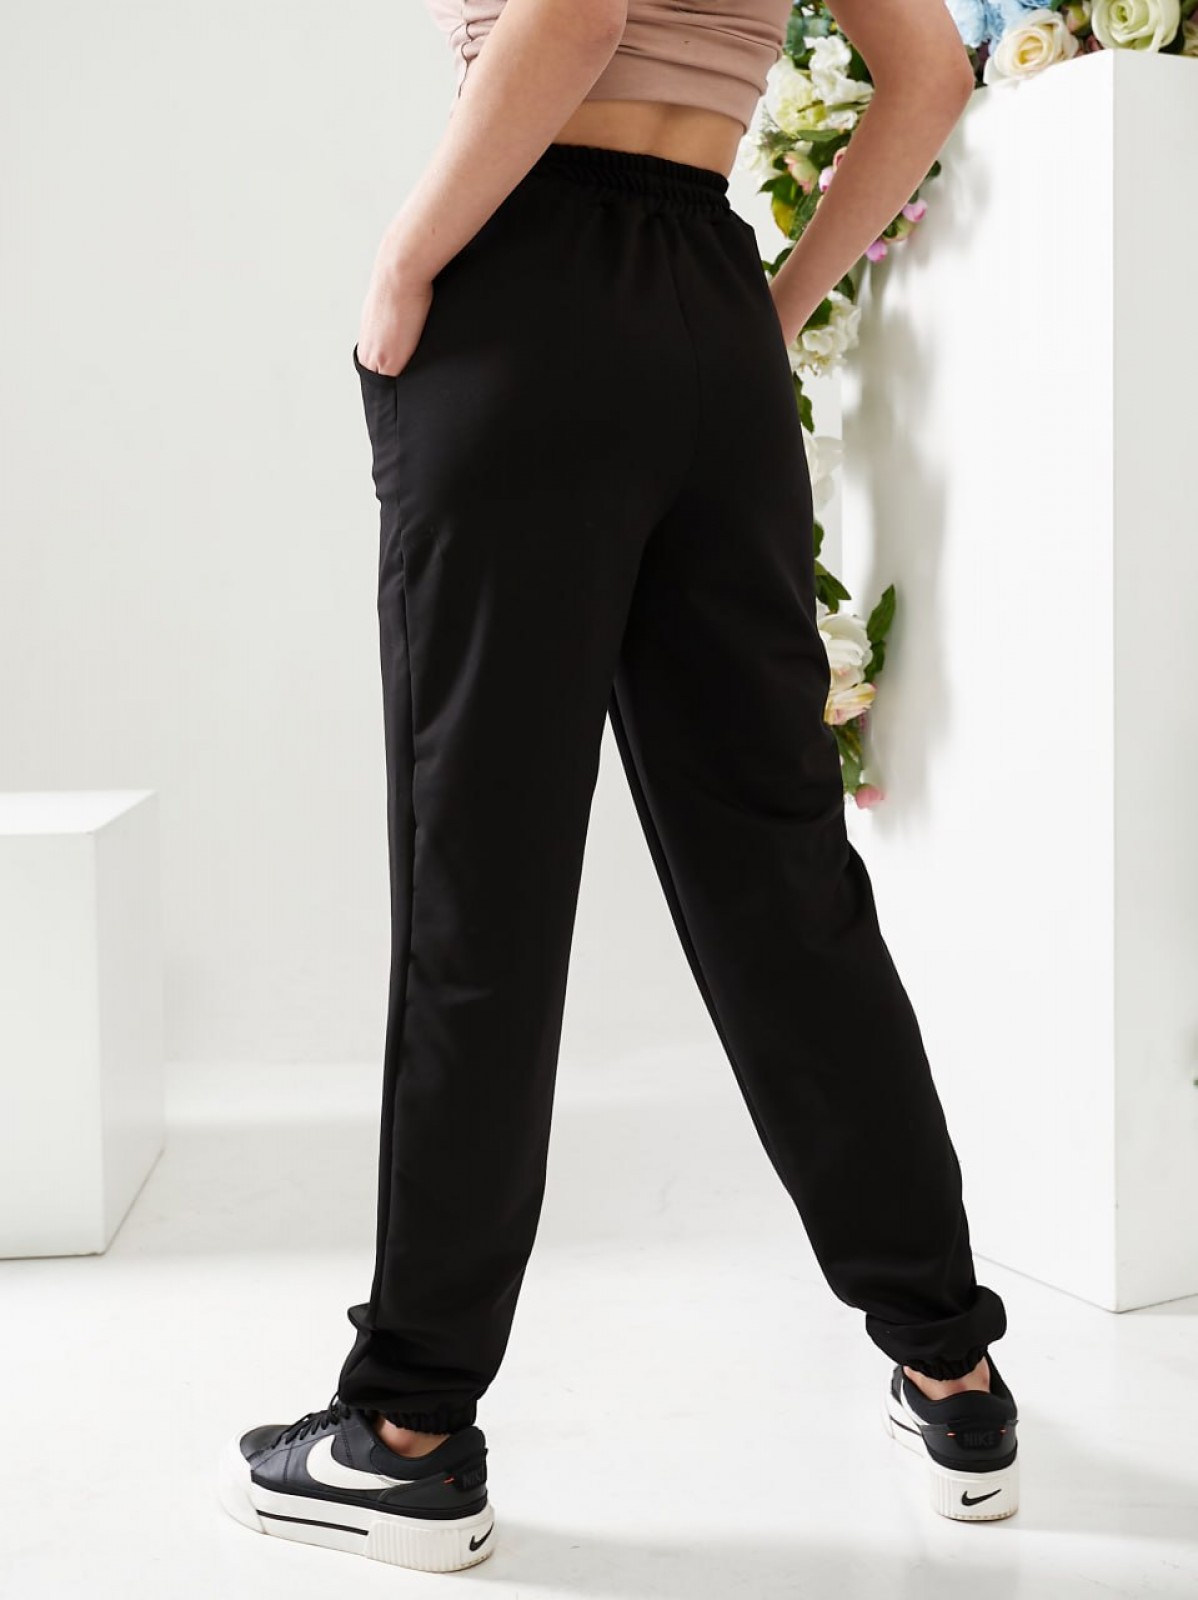 Жіночі спортивні штани двонитка чорного кольору р.44 406186